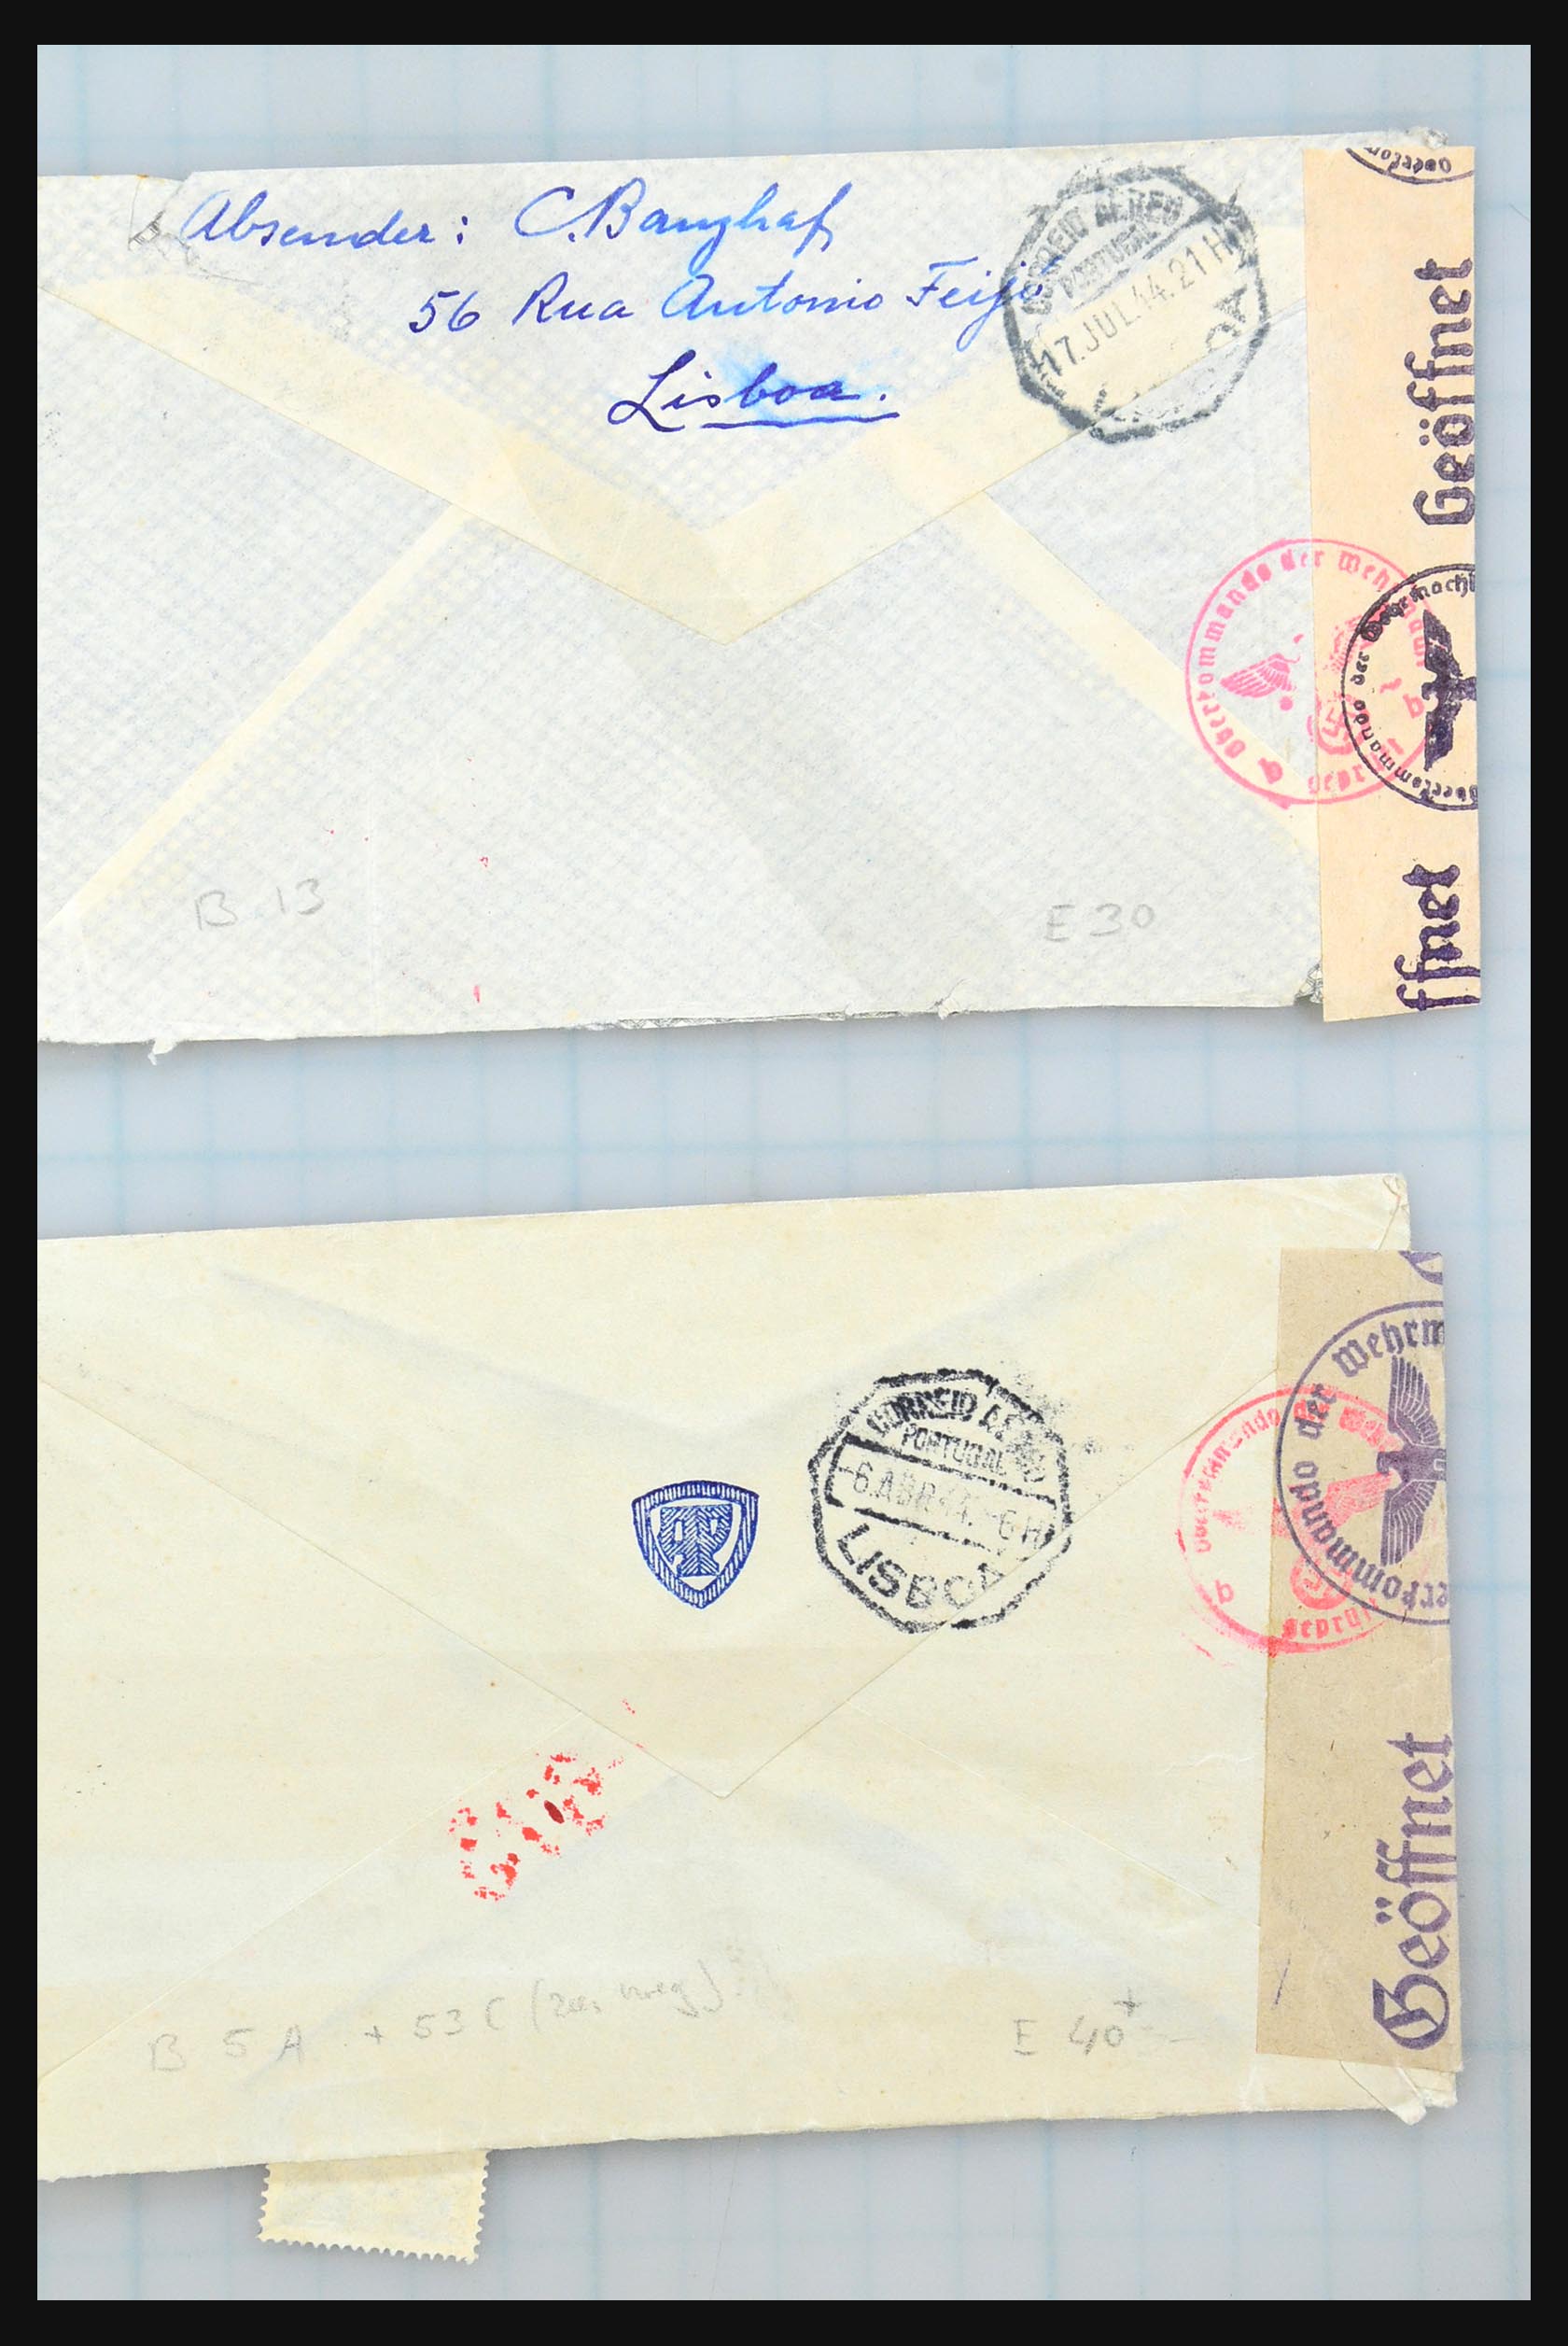 31358 251 - 31358 Portugal/Luxemburg/Griekenland brieven 1880-1960.